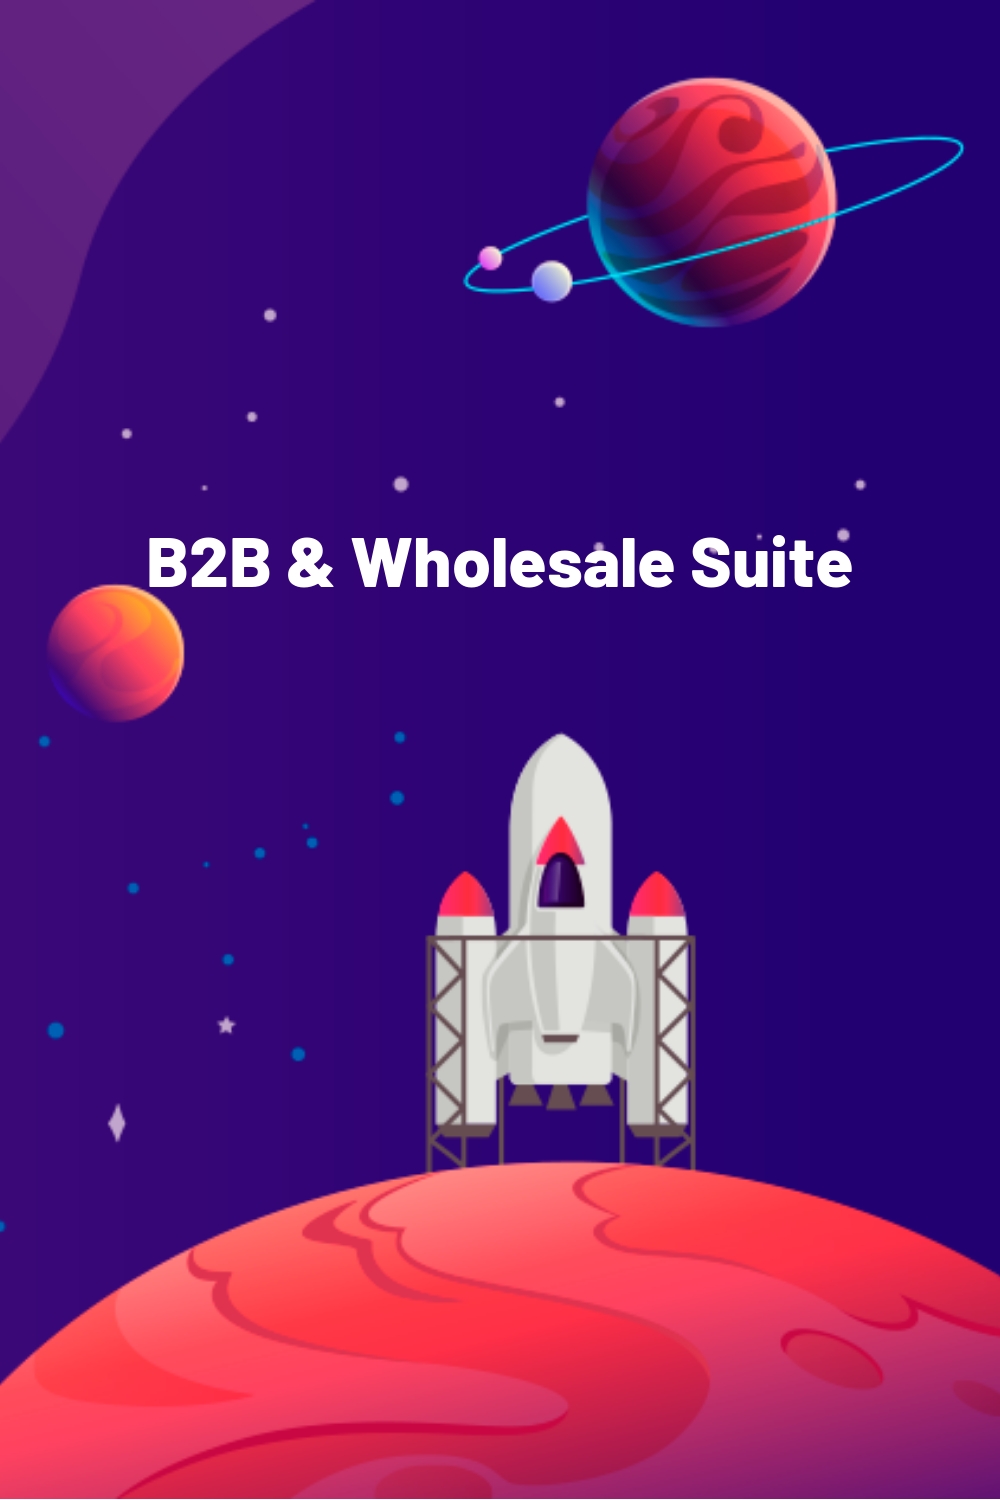 B2B & Wholesale Suite